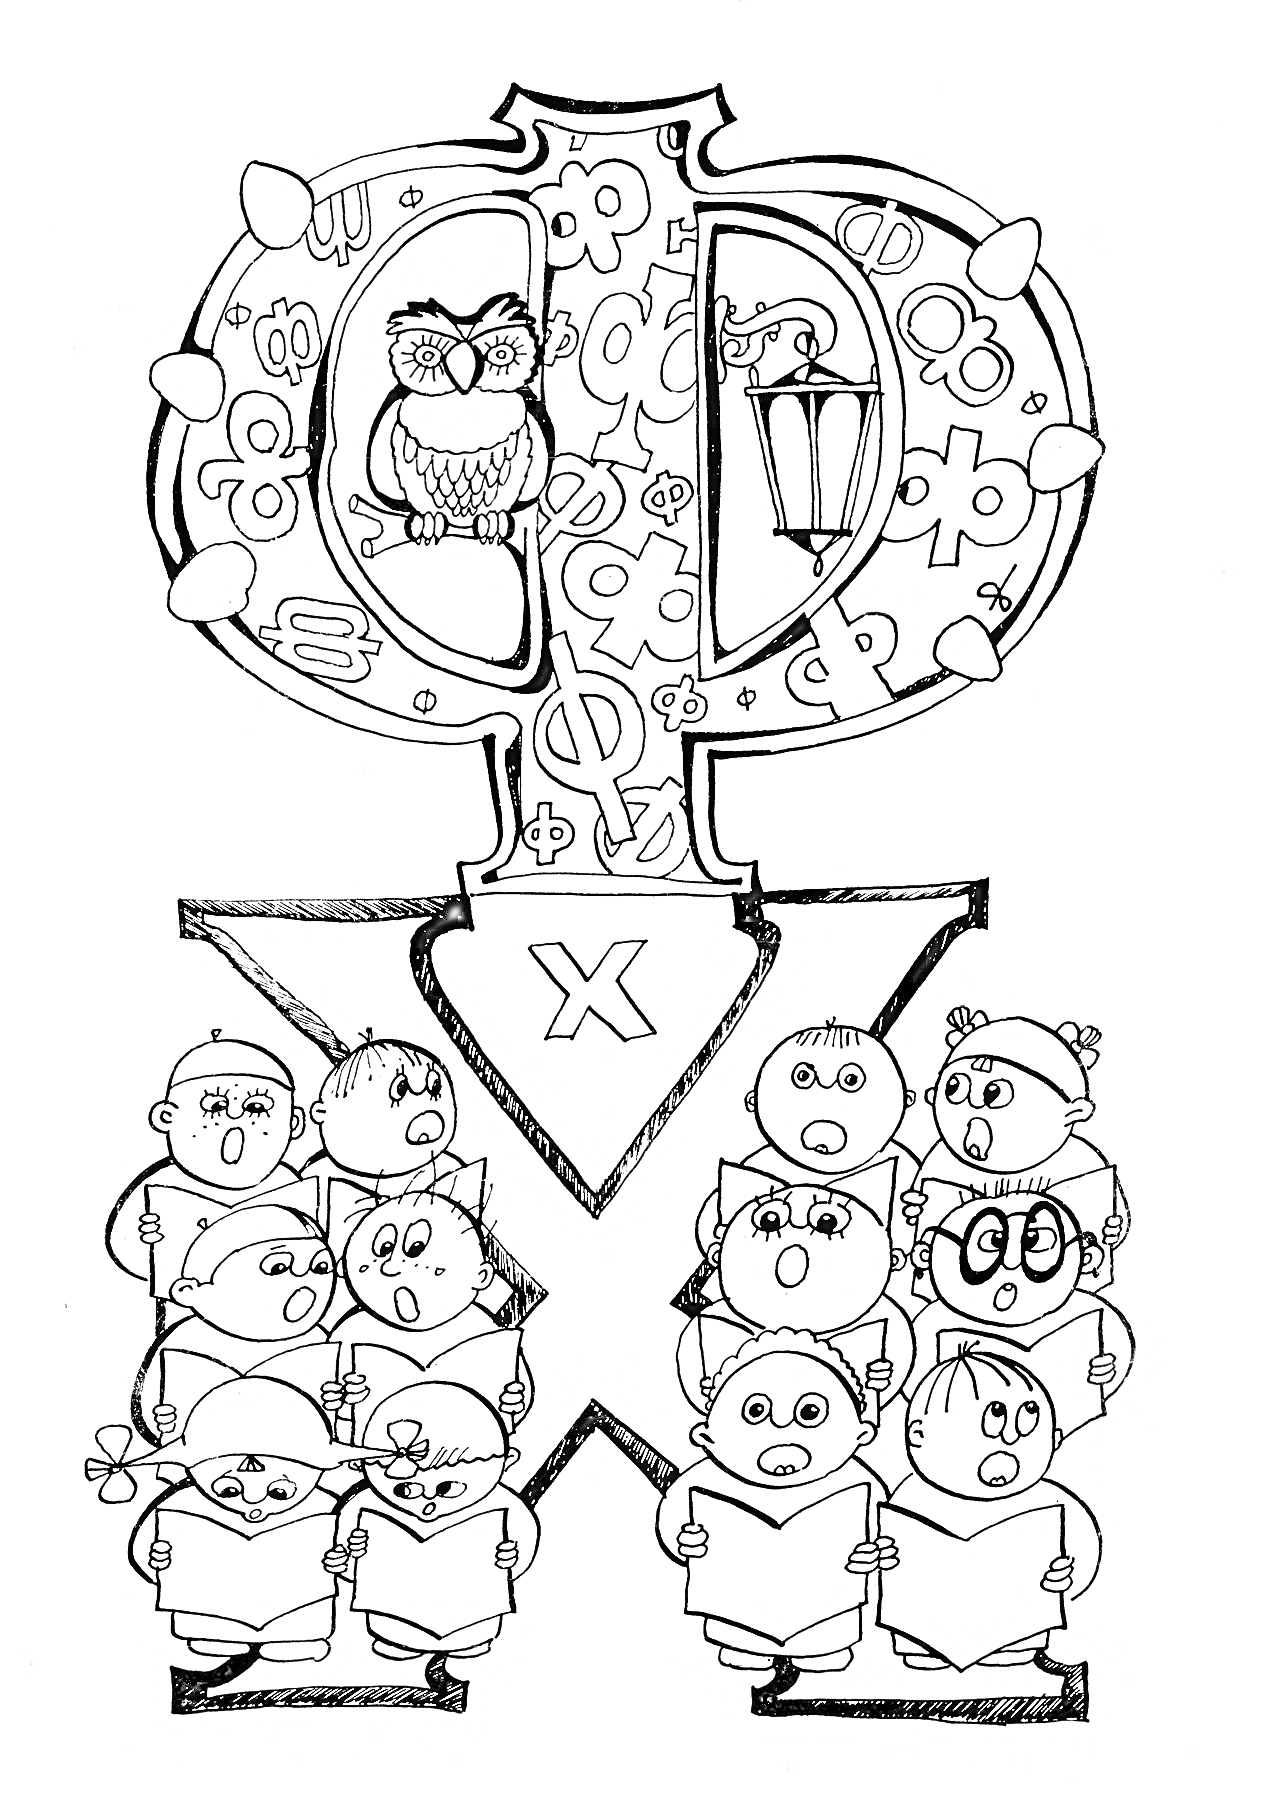 Буква Ф с совой, лампой и хором из детенышей животных